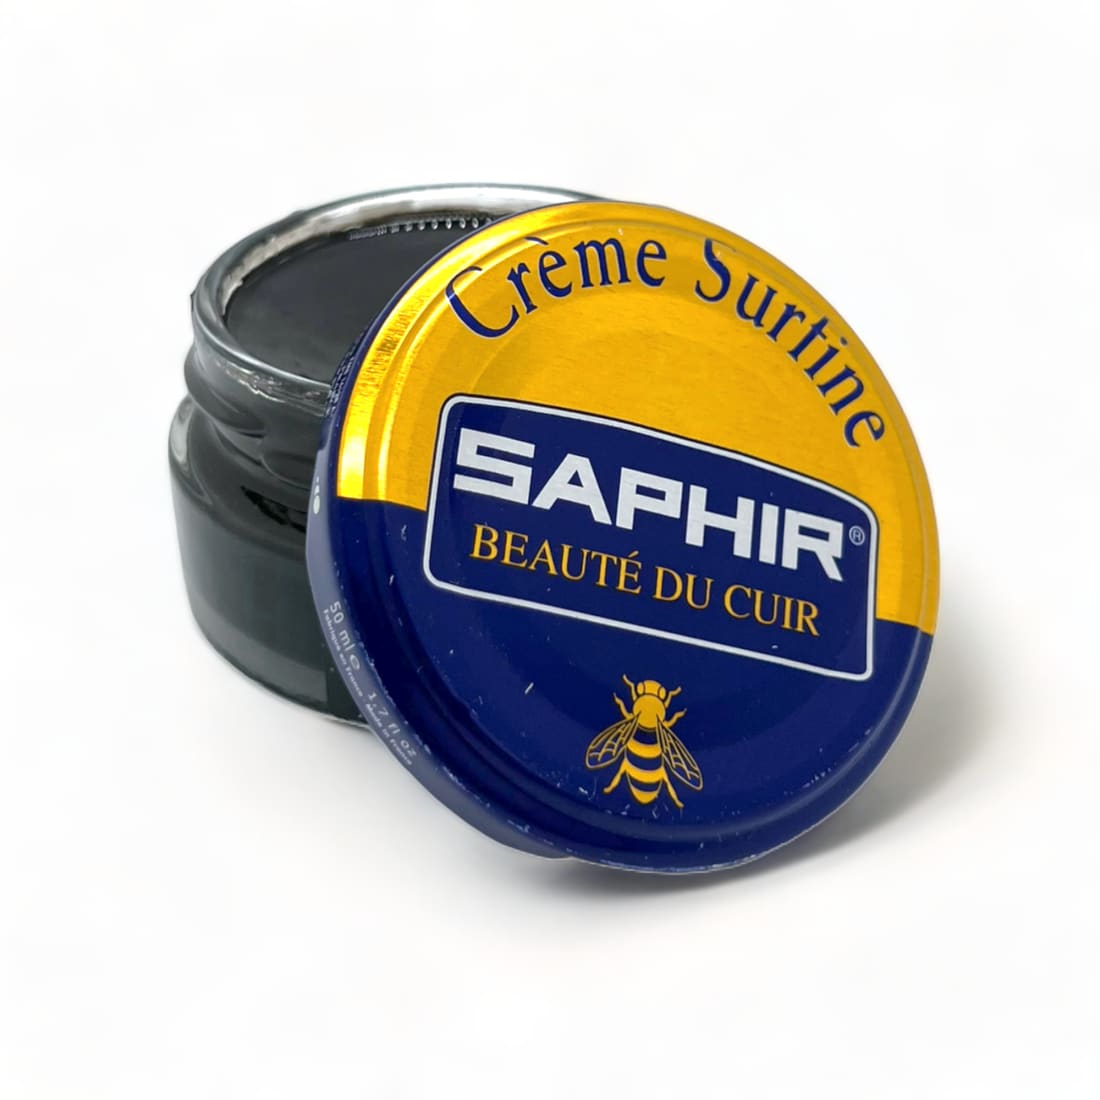 Cirage Crème Surfine Gris Foncé - Saphir - 50 ml -